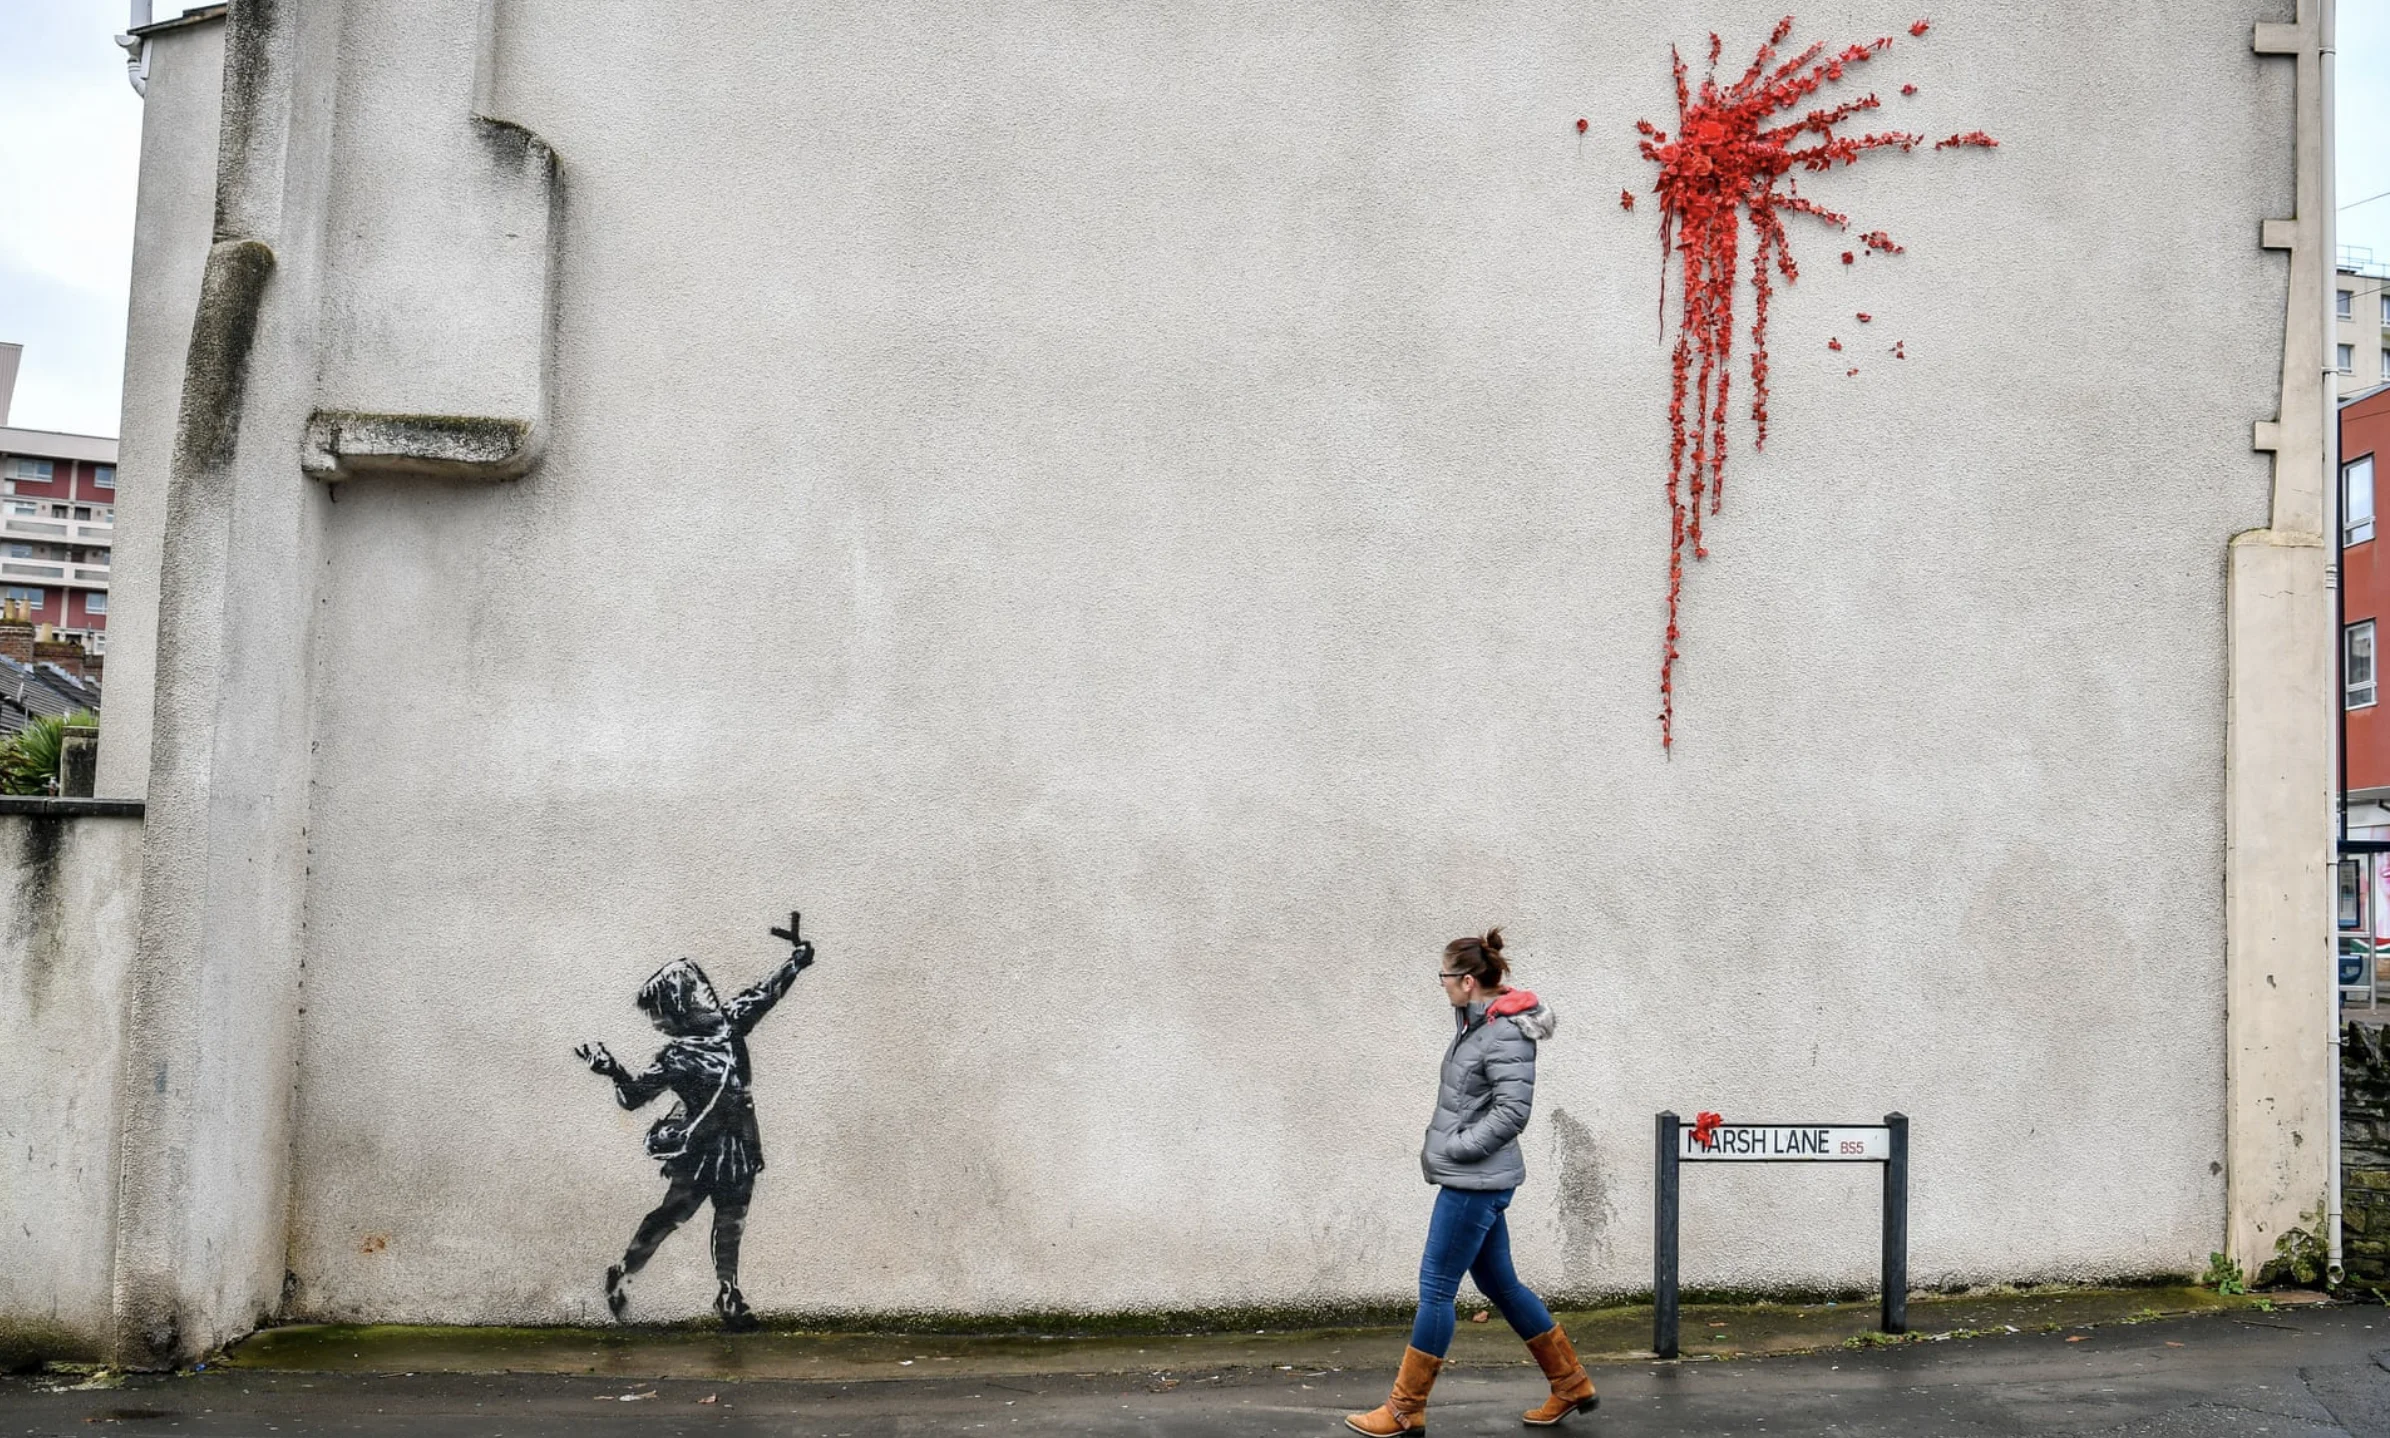 Авторство Бэнкси приписывают новому граффити на стене дома в Бристоле - фото 1